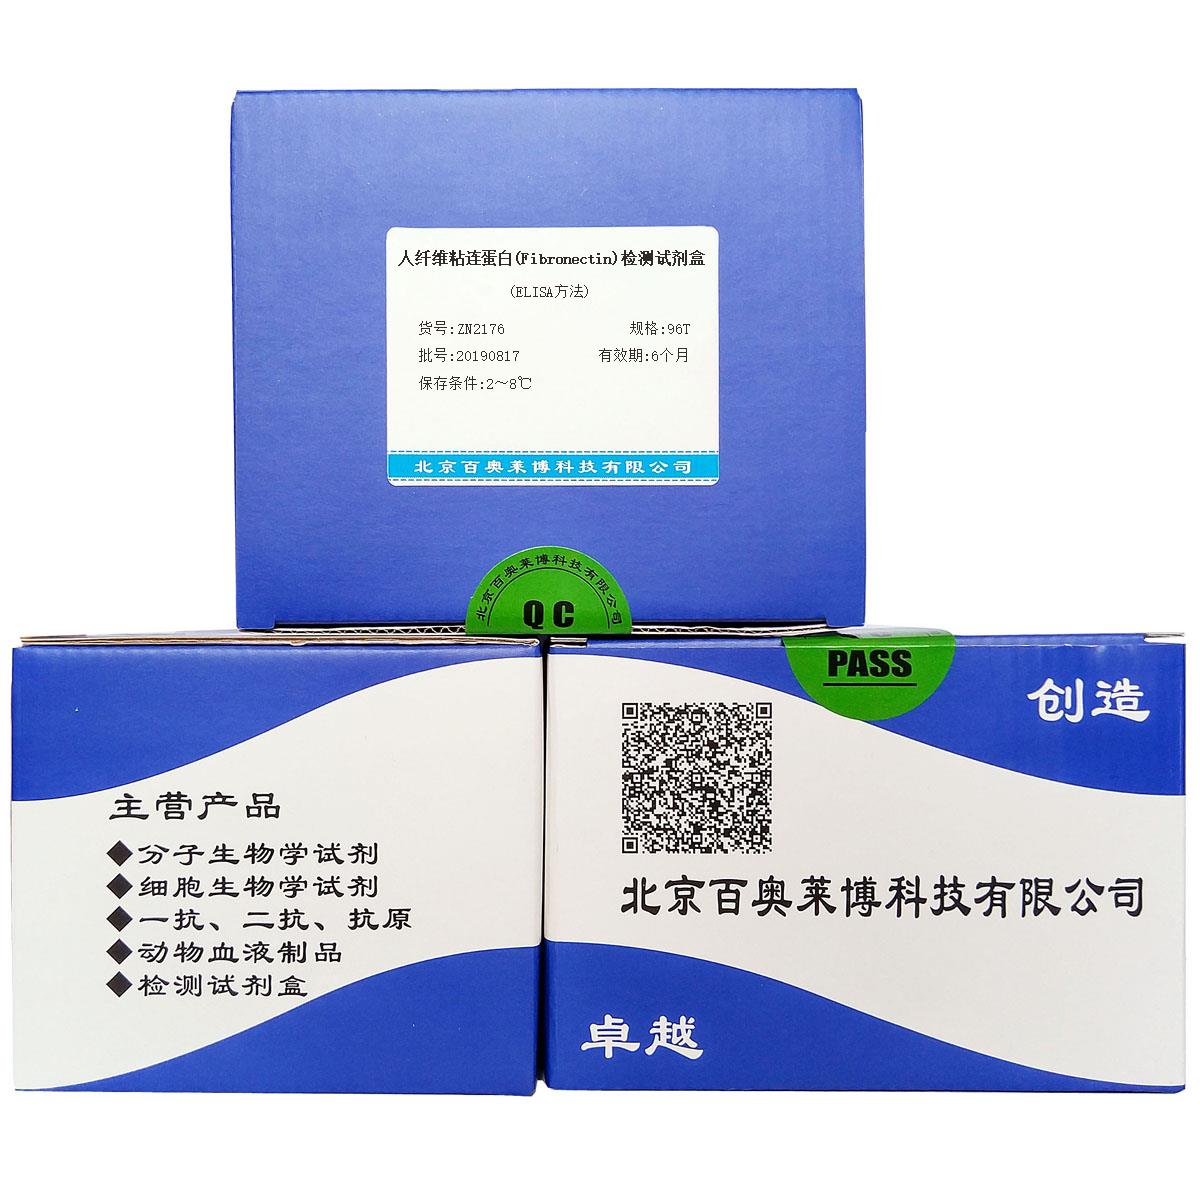 人纤维粘连蛋白(Fibronectin)检测试剂盒(ELISA方法)